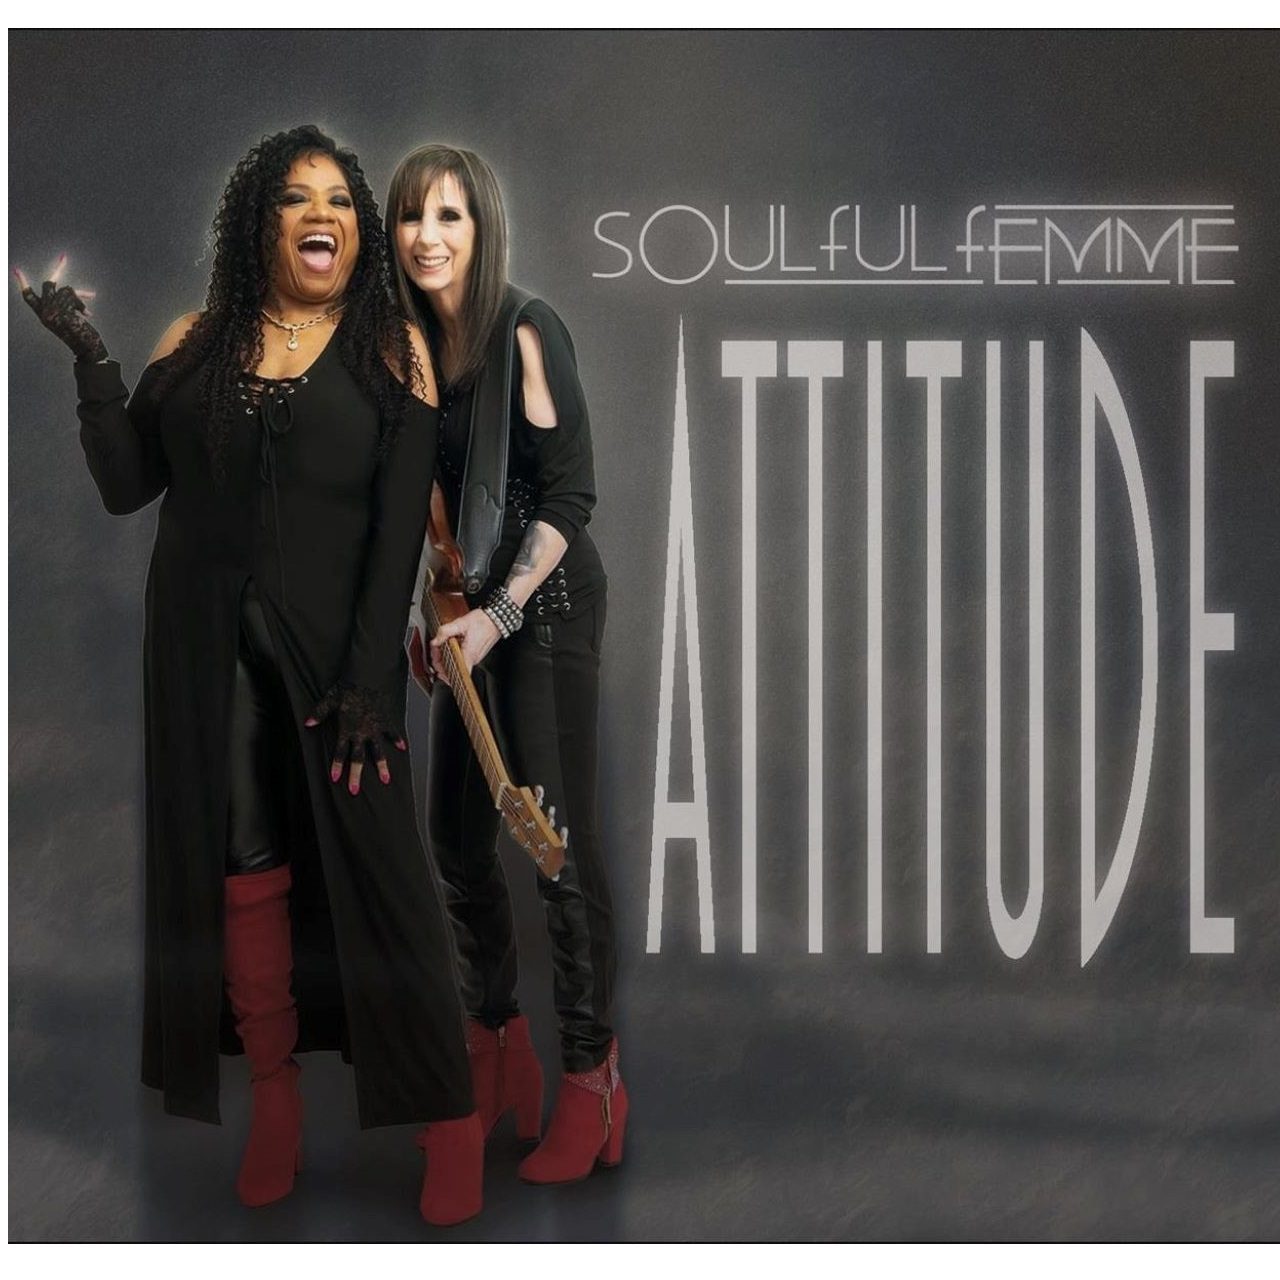 Soulful Femme - Attitude cover album